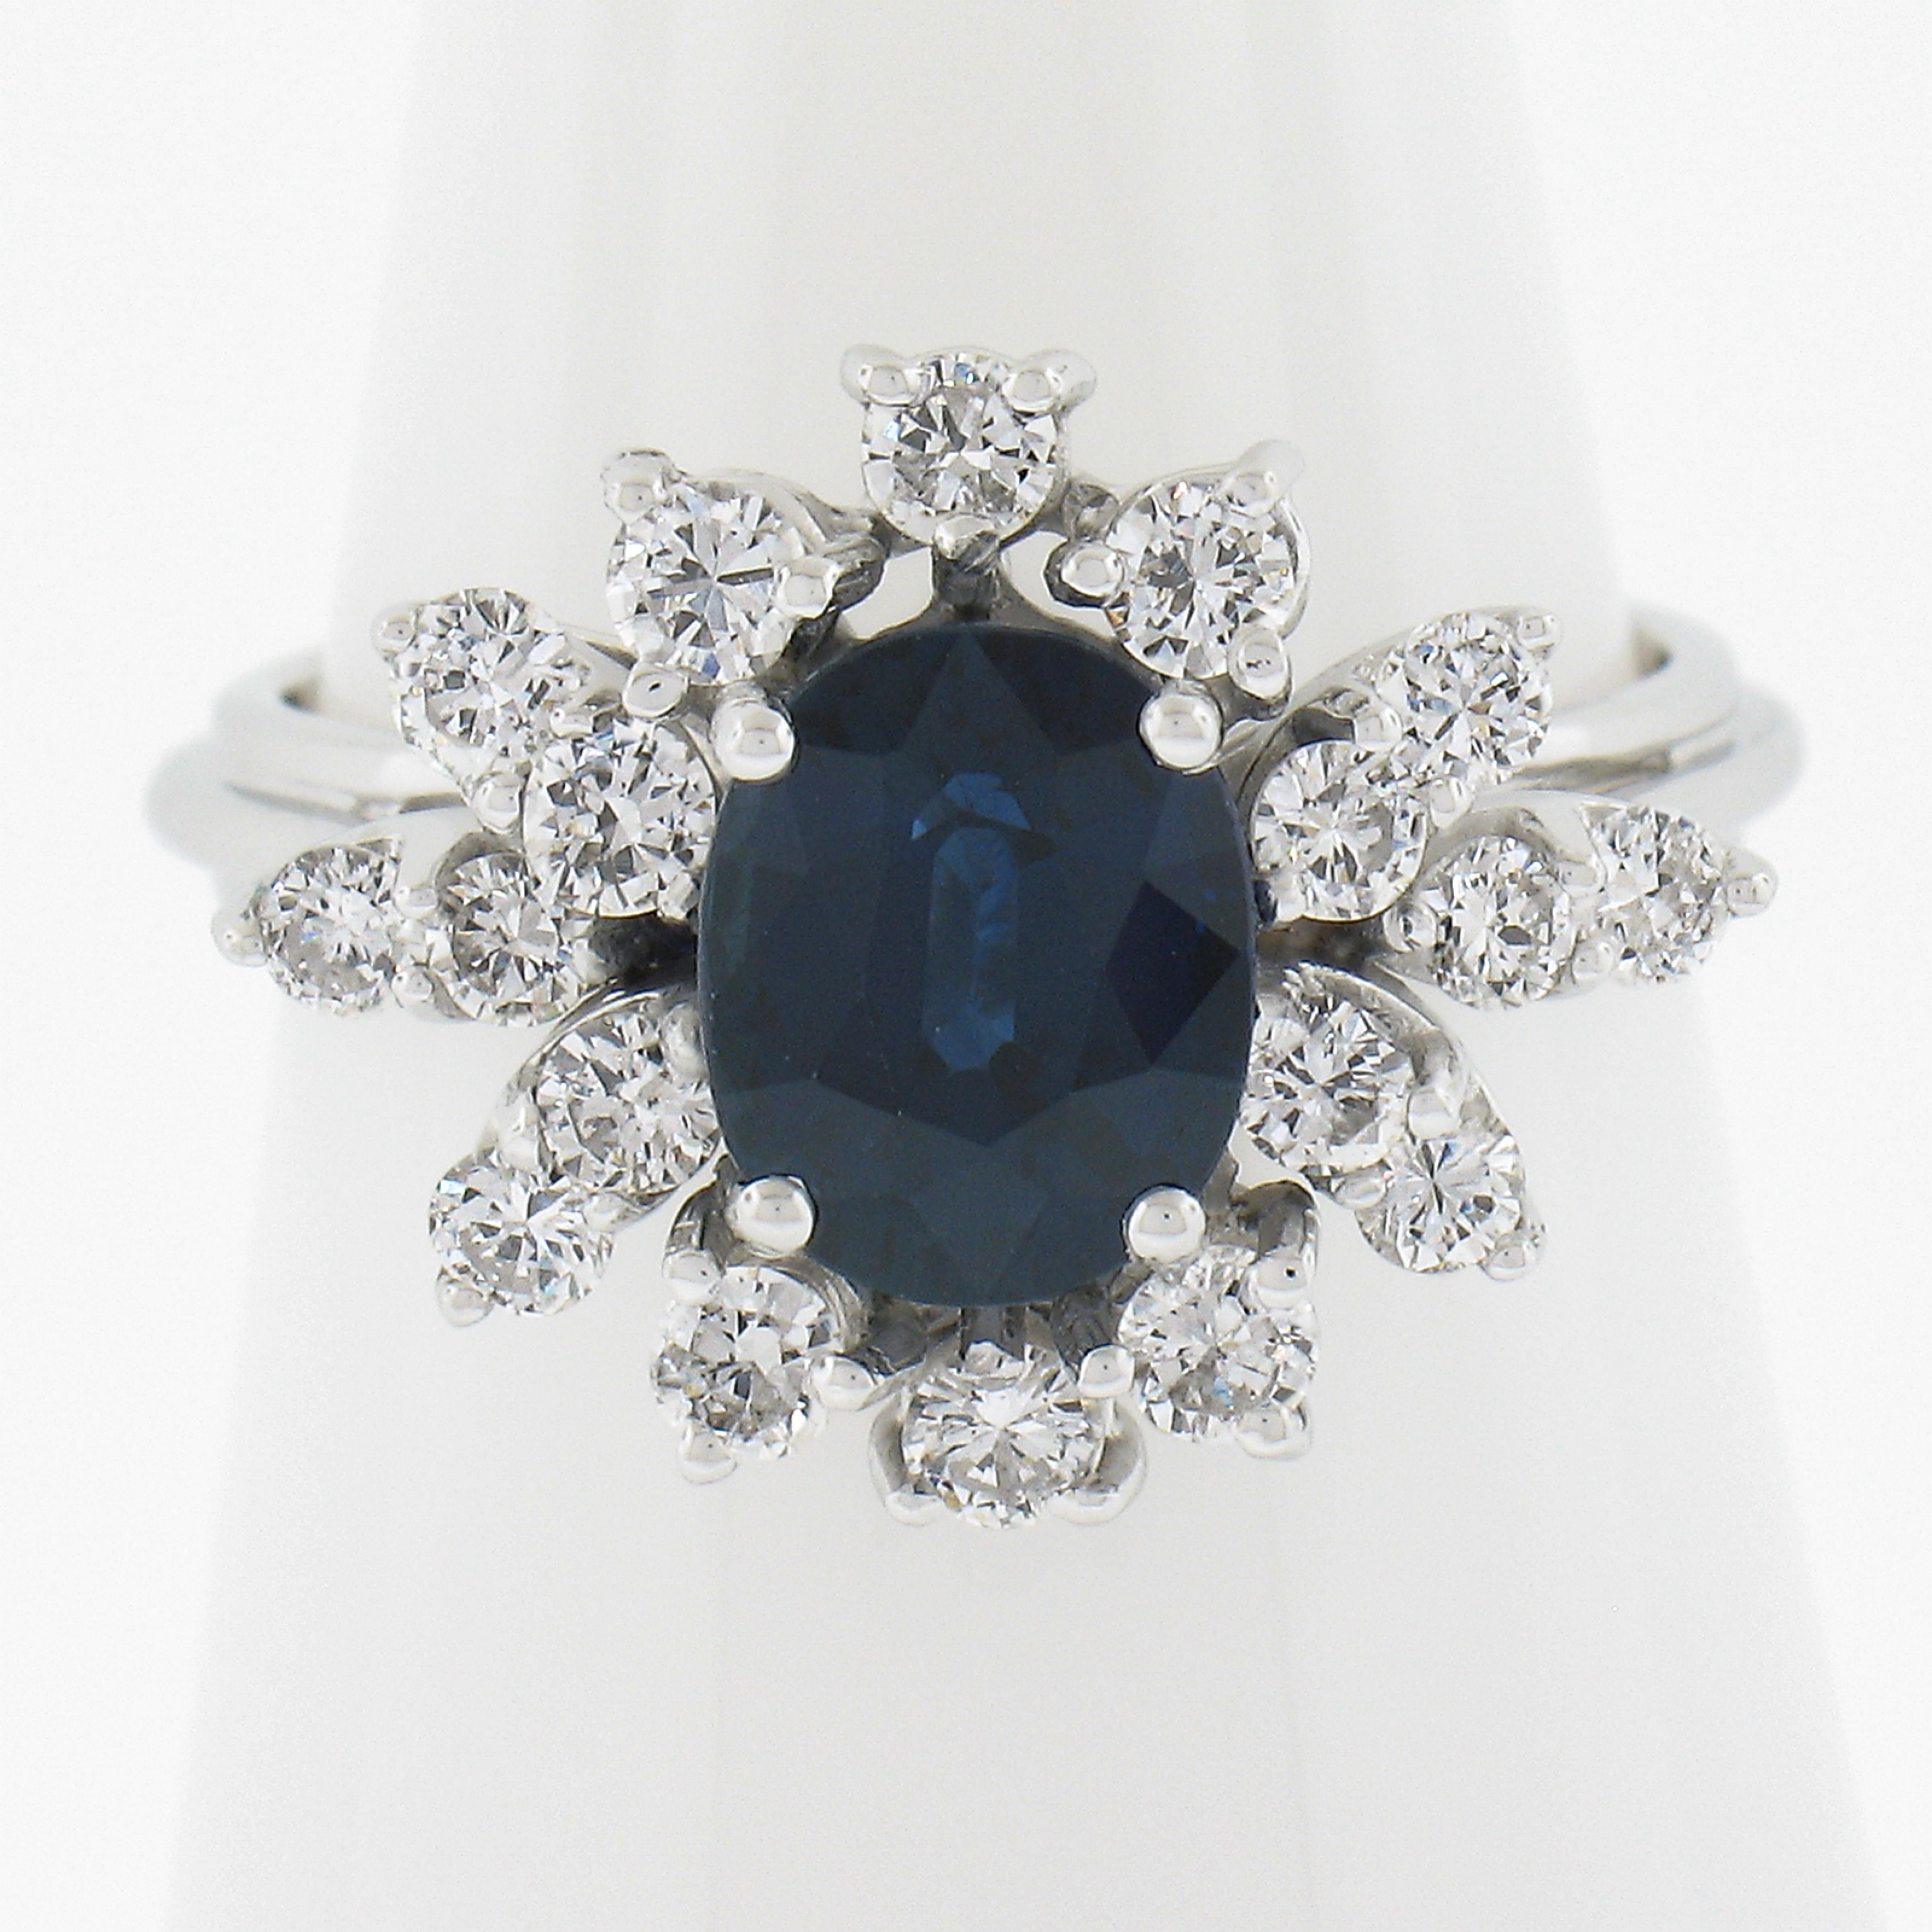 --Stein(e):--
(1) Natürlicher echter Saphir - Ovaler Brillantschliff - Zinkenbesatz - Farbe Königsblau - ERHITZT - 1,84ct (genau, zertifiziert)
*Ausführliche Informationen zur Zertifizierung siehe unten* 
(18) Natürliche echte Diamanten - runder